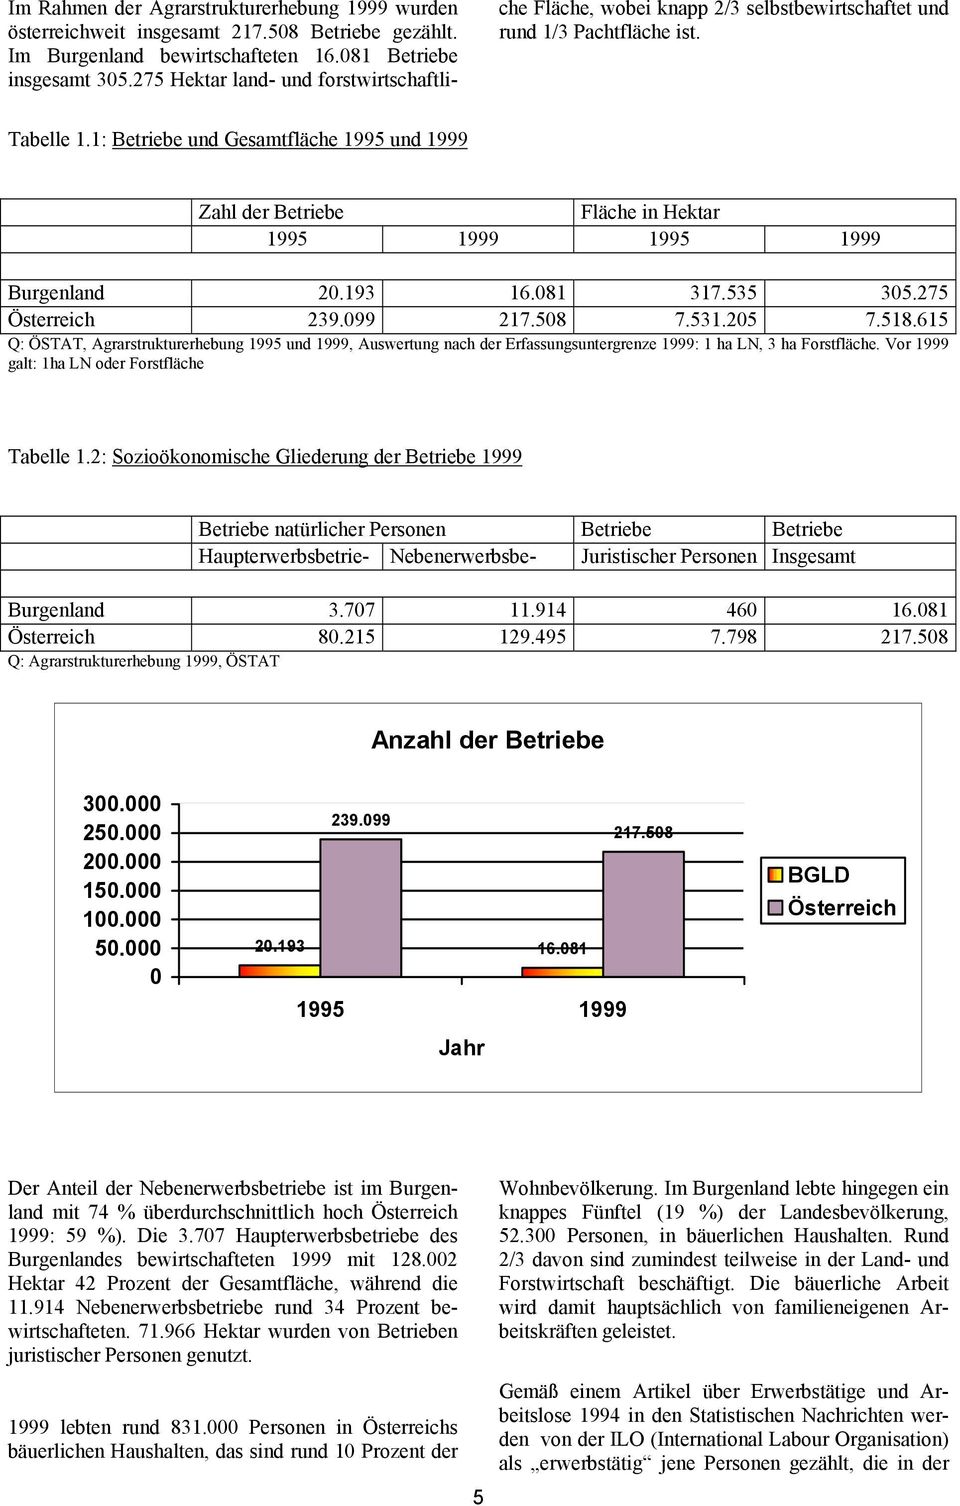 1: Betriebe und Gesamtfläche 1995 und 1999 Zahl der Betriebe Fläche in Hektar 1995 1999 1995 1999 Burgenland 20.193 16.081 317.535 305.275 Österreich 239.099 217.508 7.531.205 7.518.